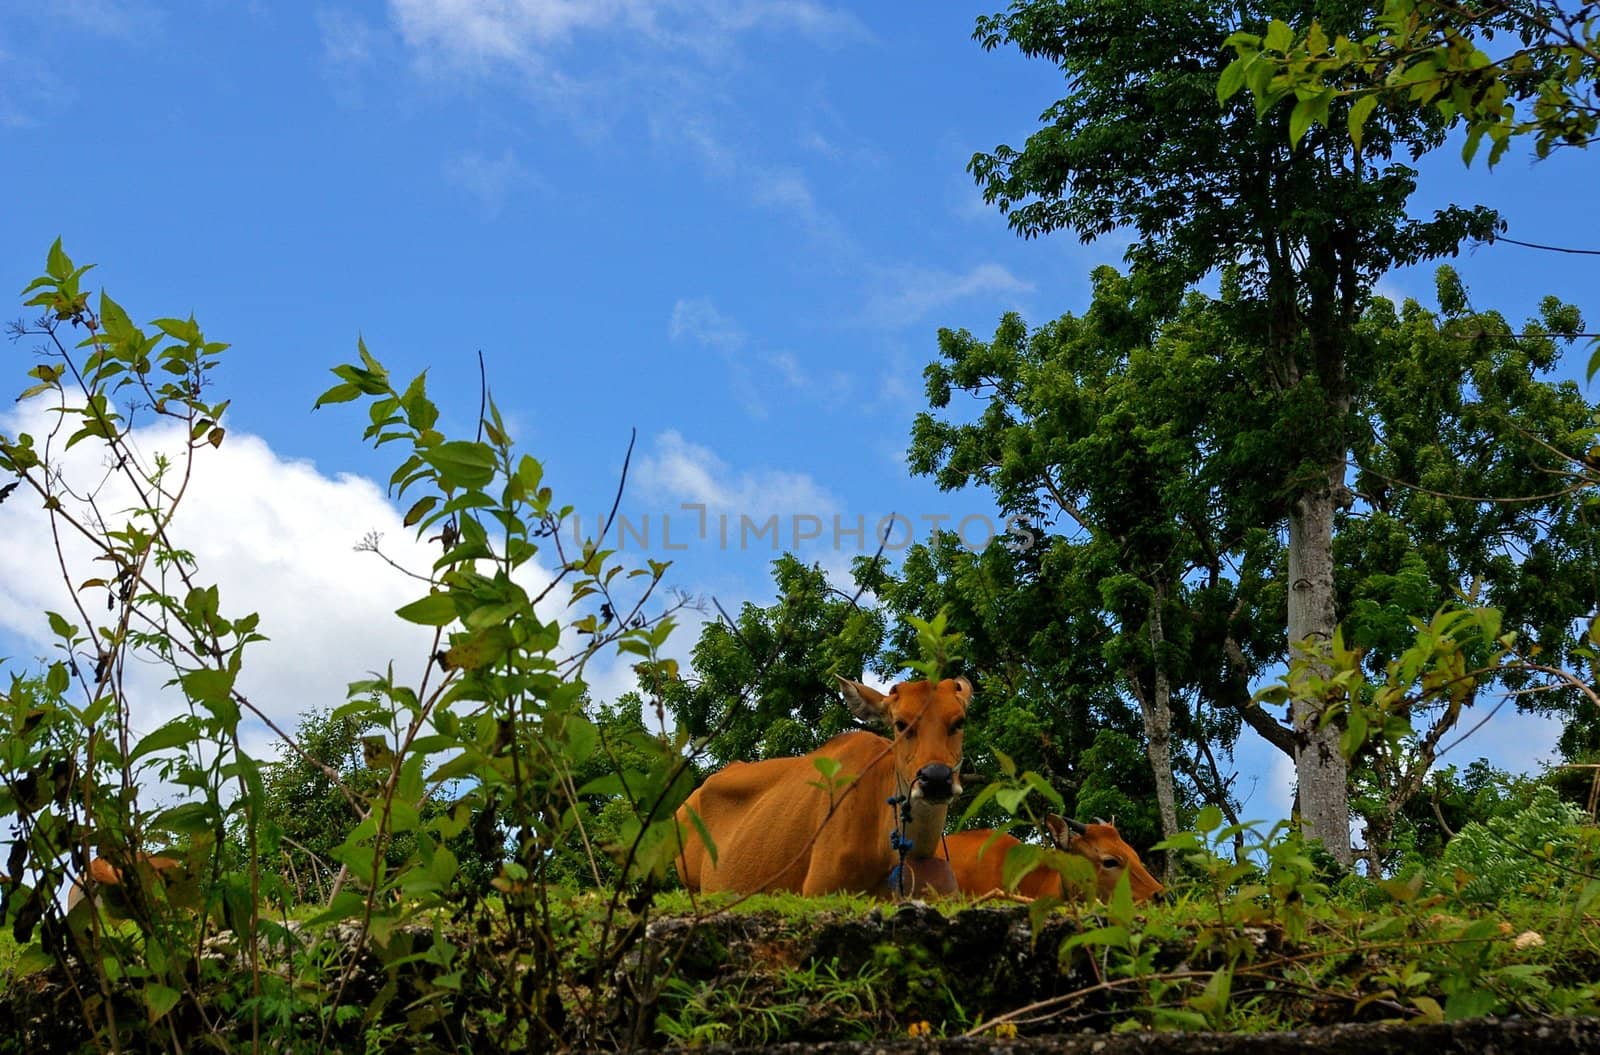 Cows grazing in a field, Jimbaran, Bali, Indonesia.